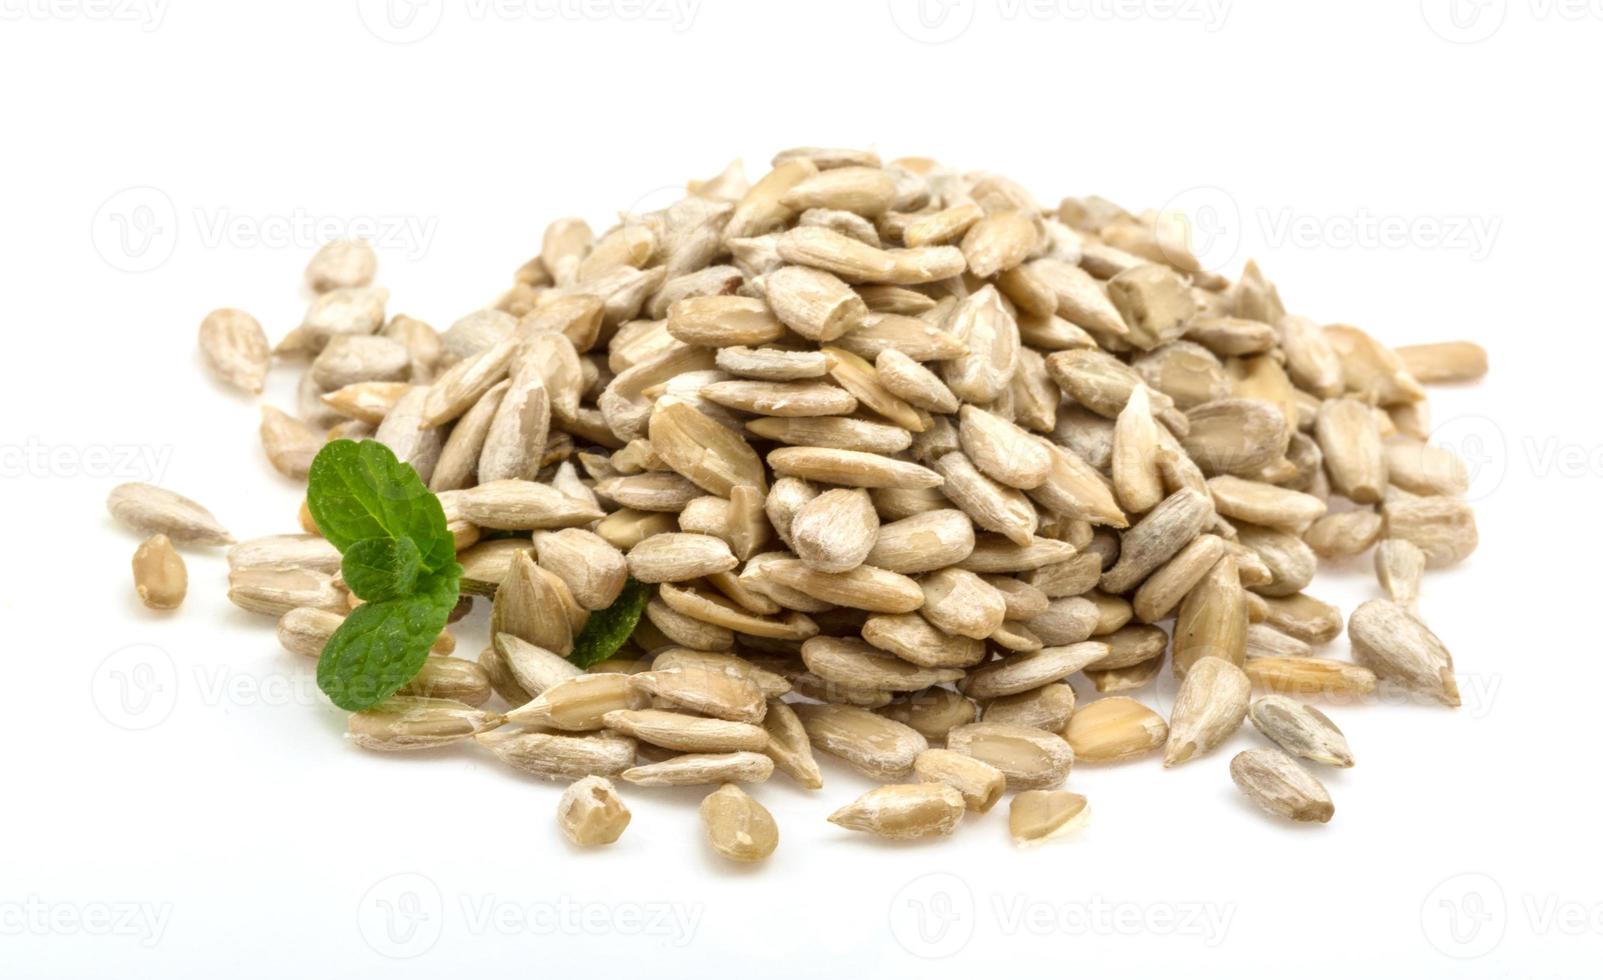 sementes de girassol em fundo branco foto